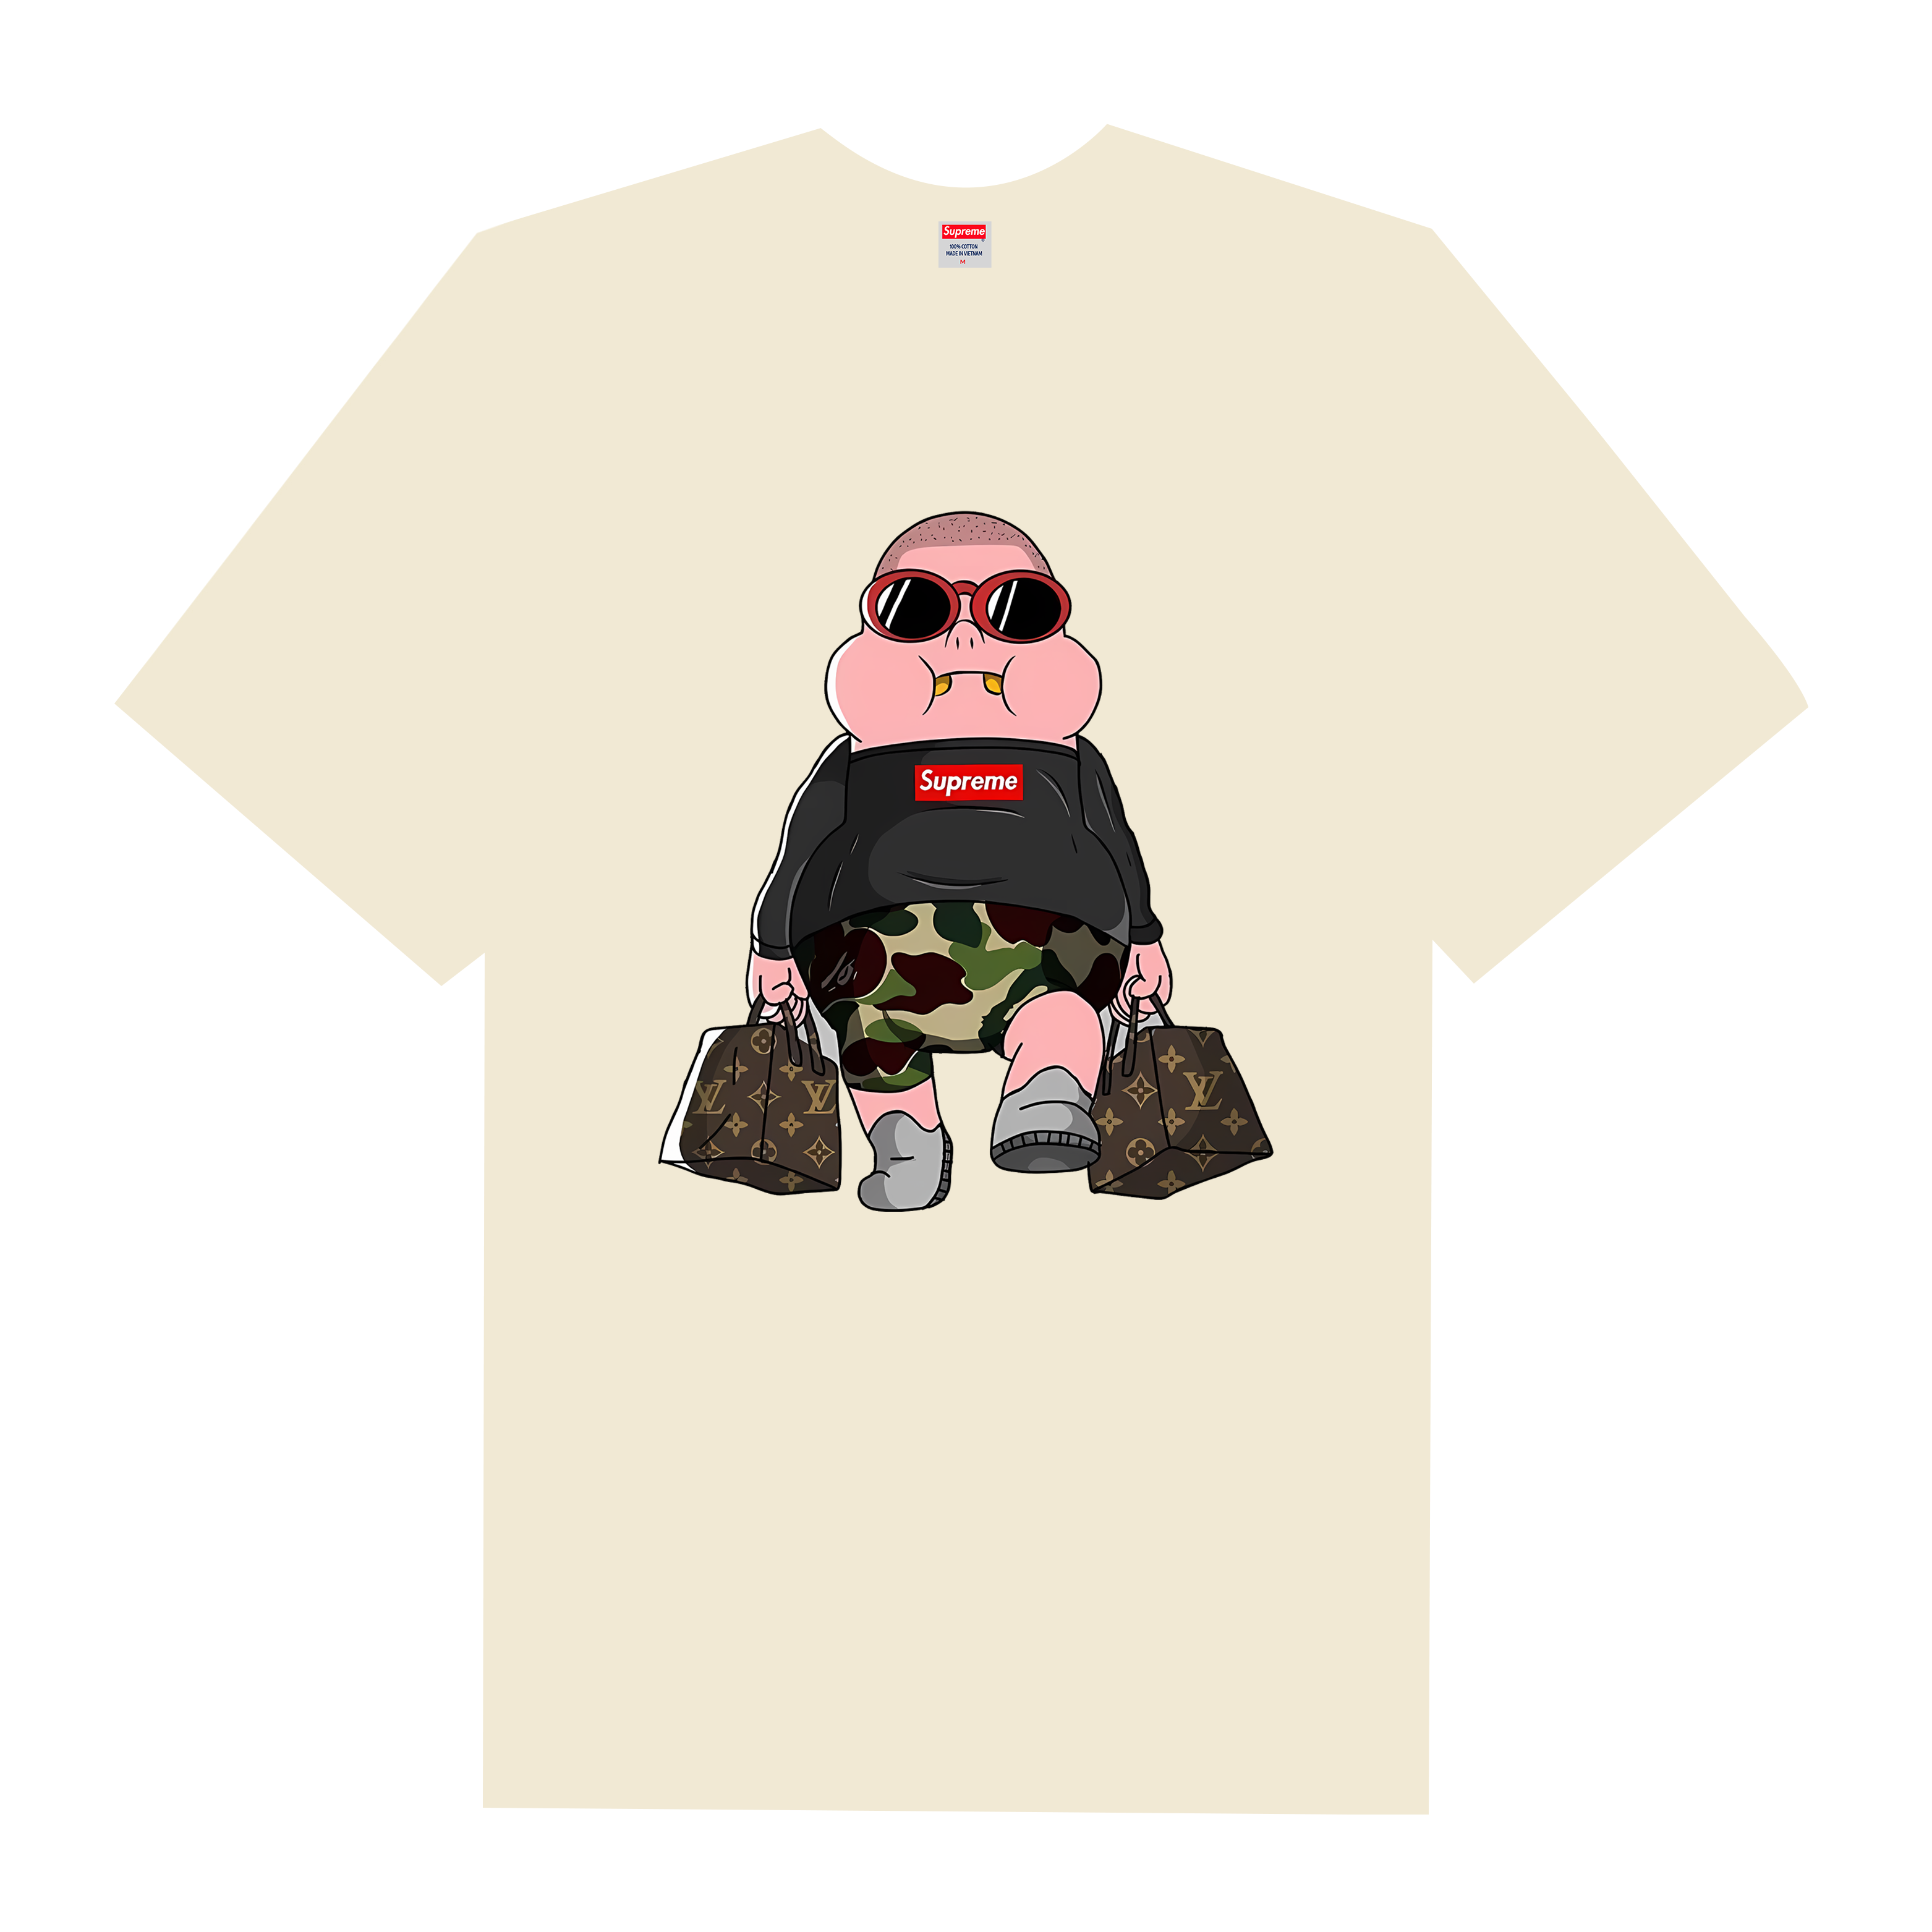 Supreme Meme Funny Boy T-Shirt